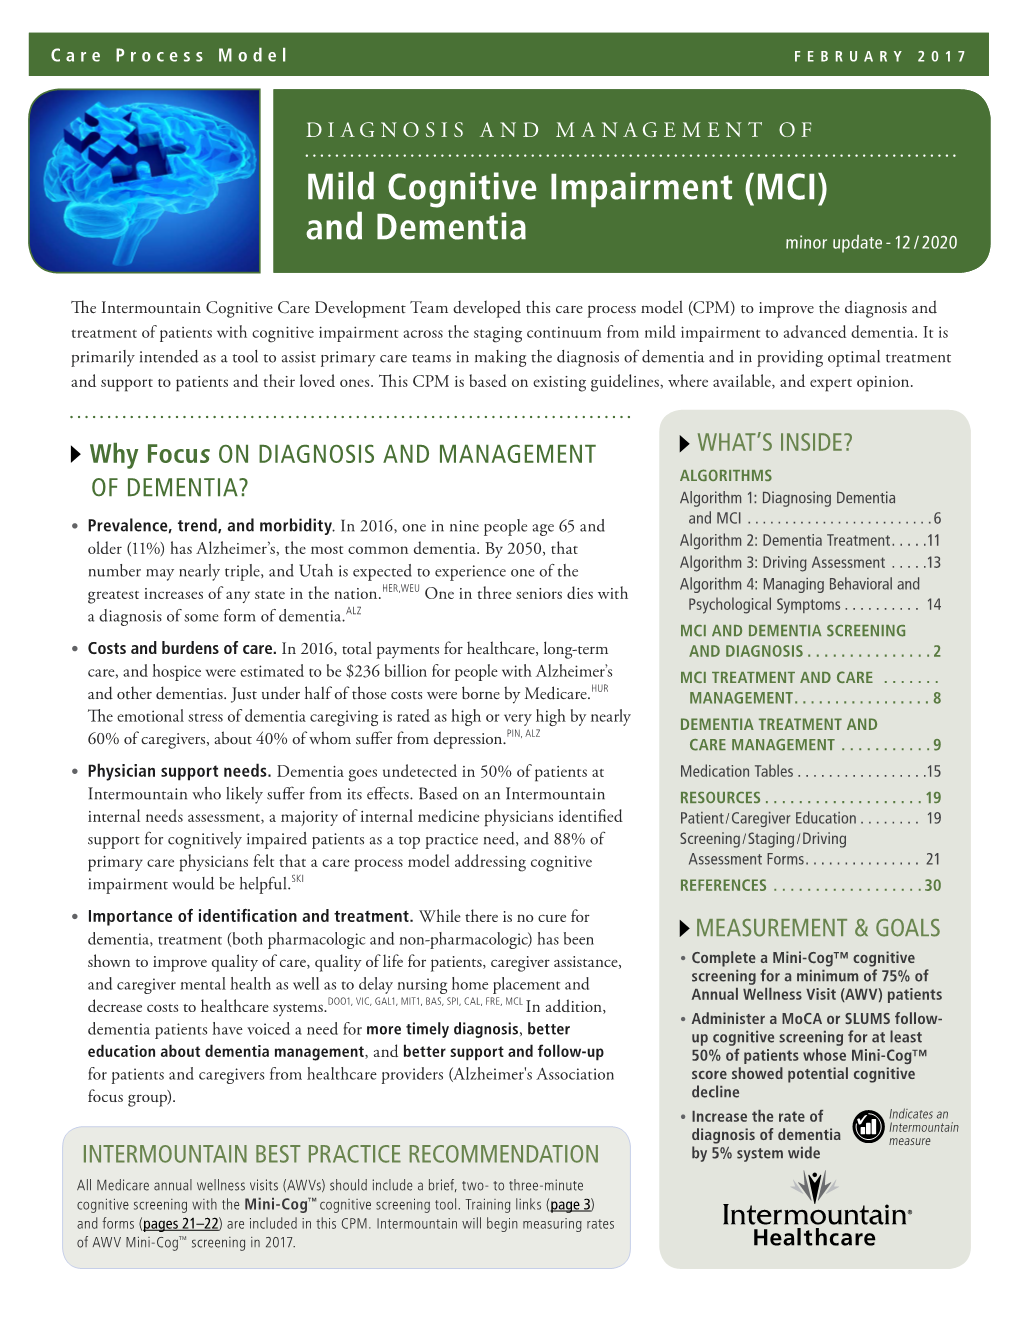 Mild Cognitive Impairment (Mci) and Dementia February 2017